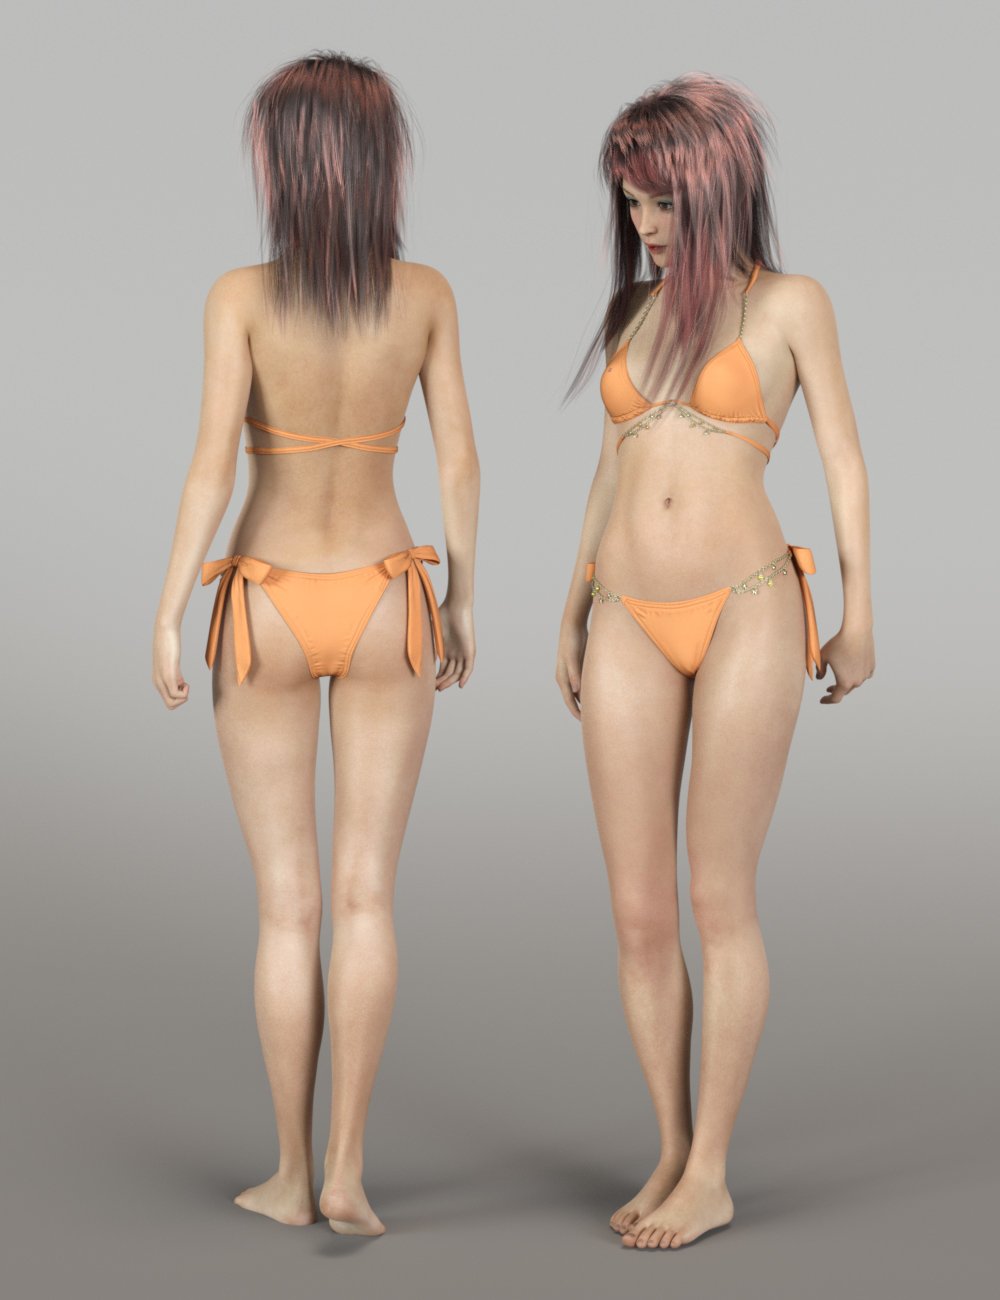 Aoi for Genesis 8 Female by: Warloc, 3D Models by Daz 3D